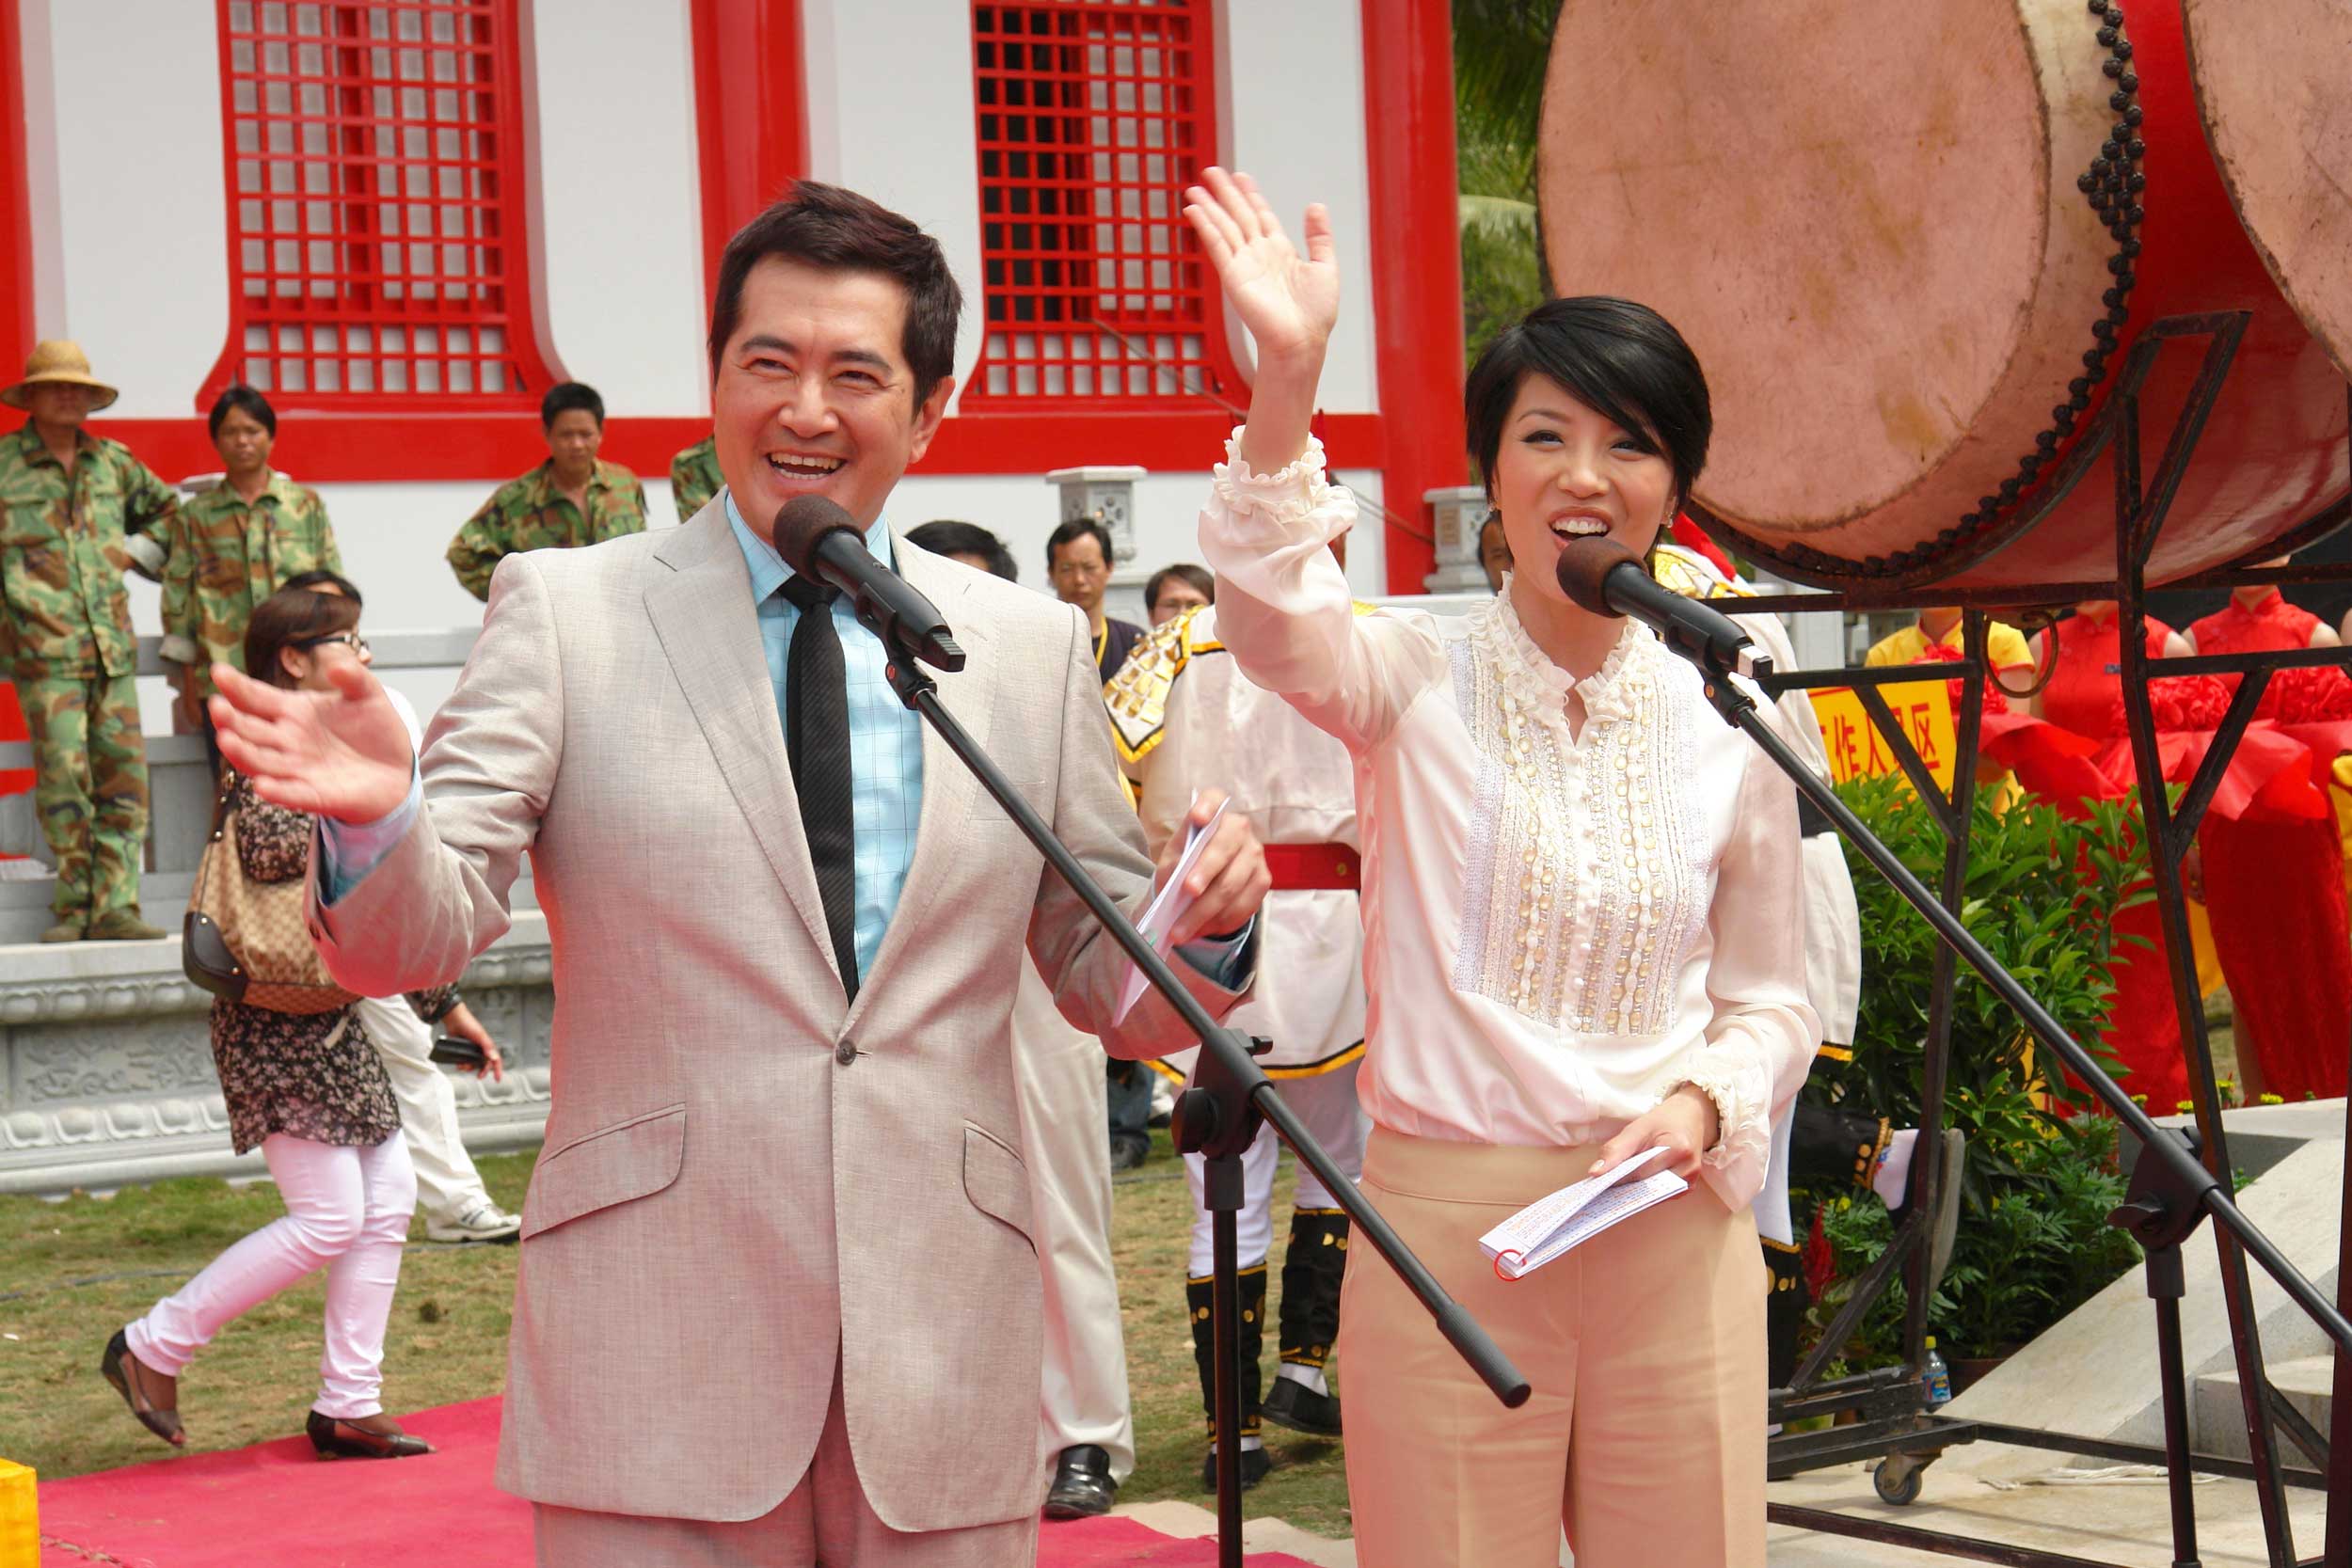 大會主持邀請無綫電視皇牌司儀鄧梓峰及陳芷菁參加。